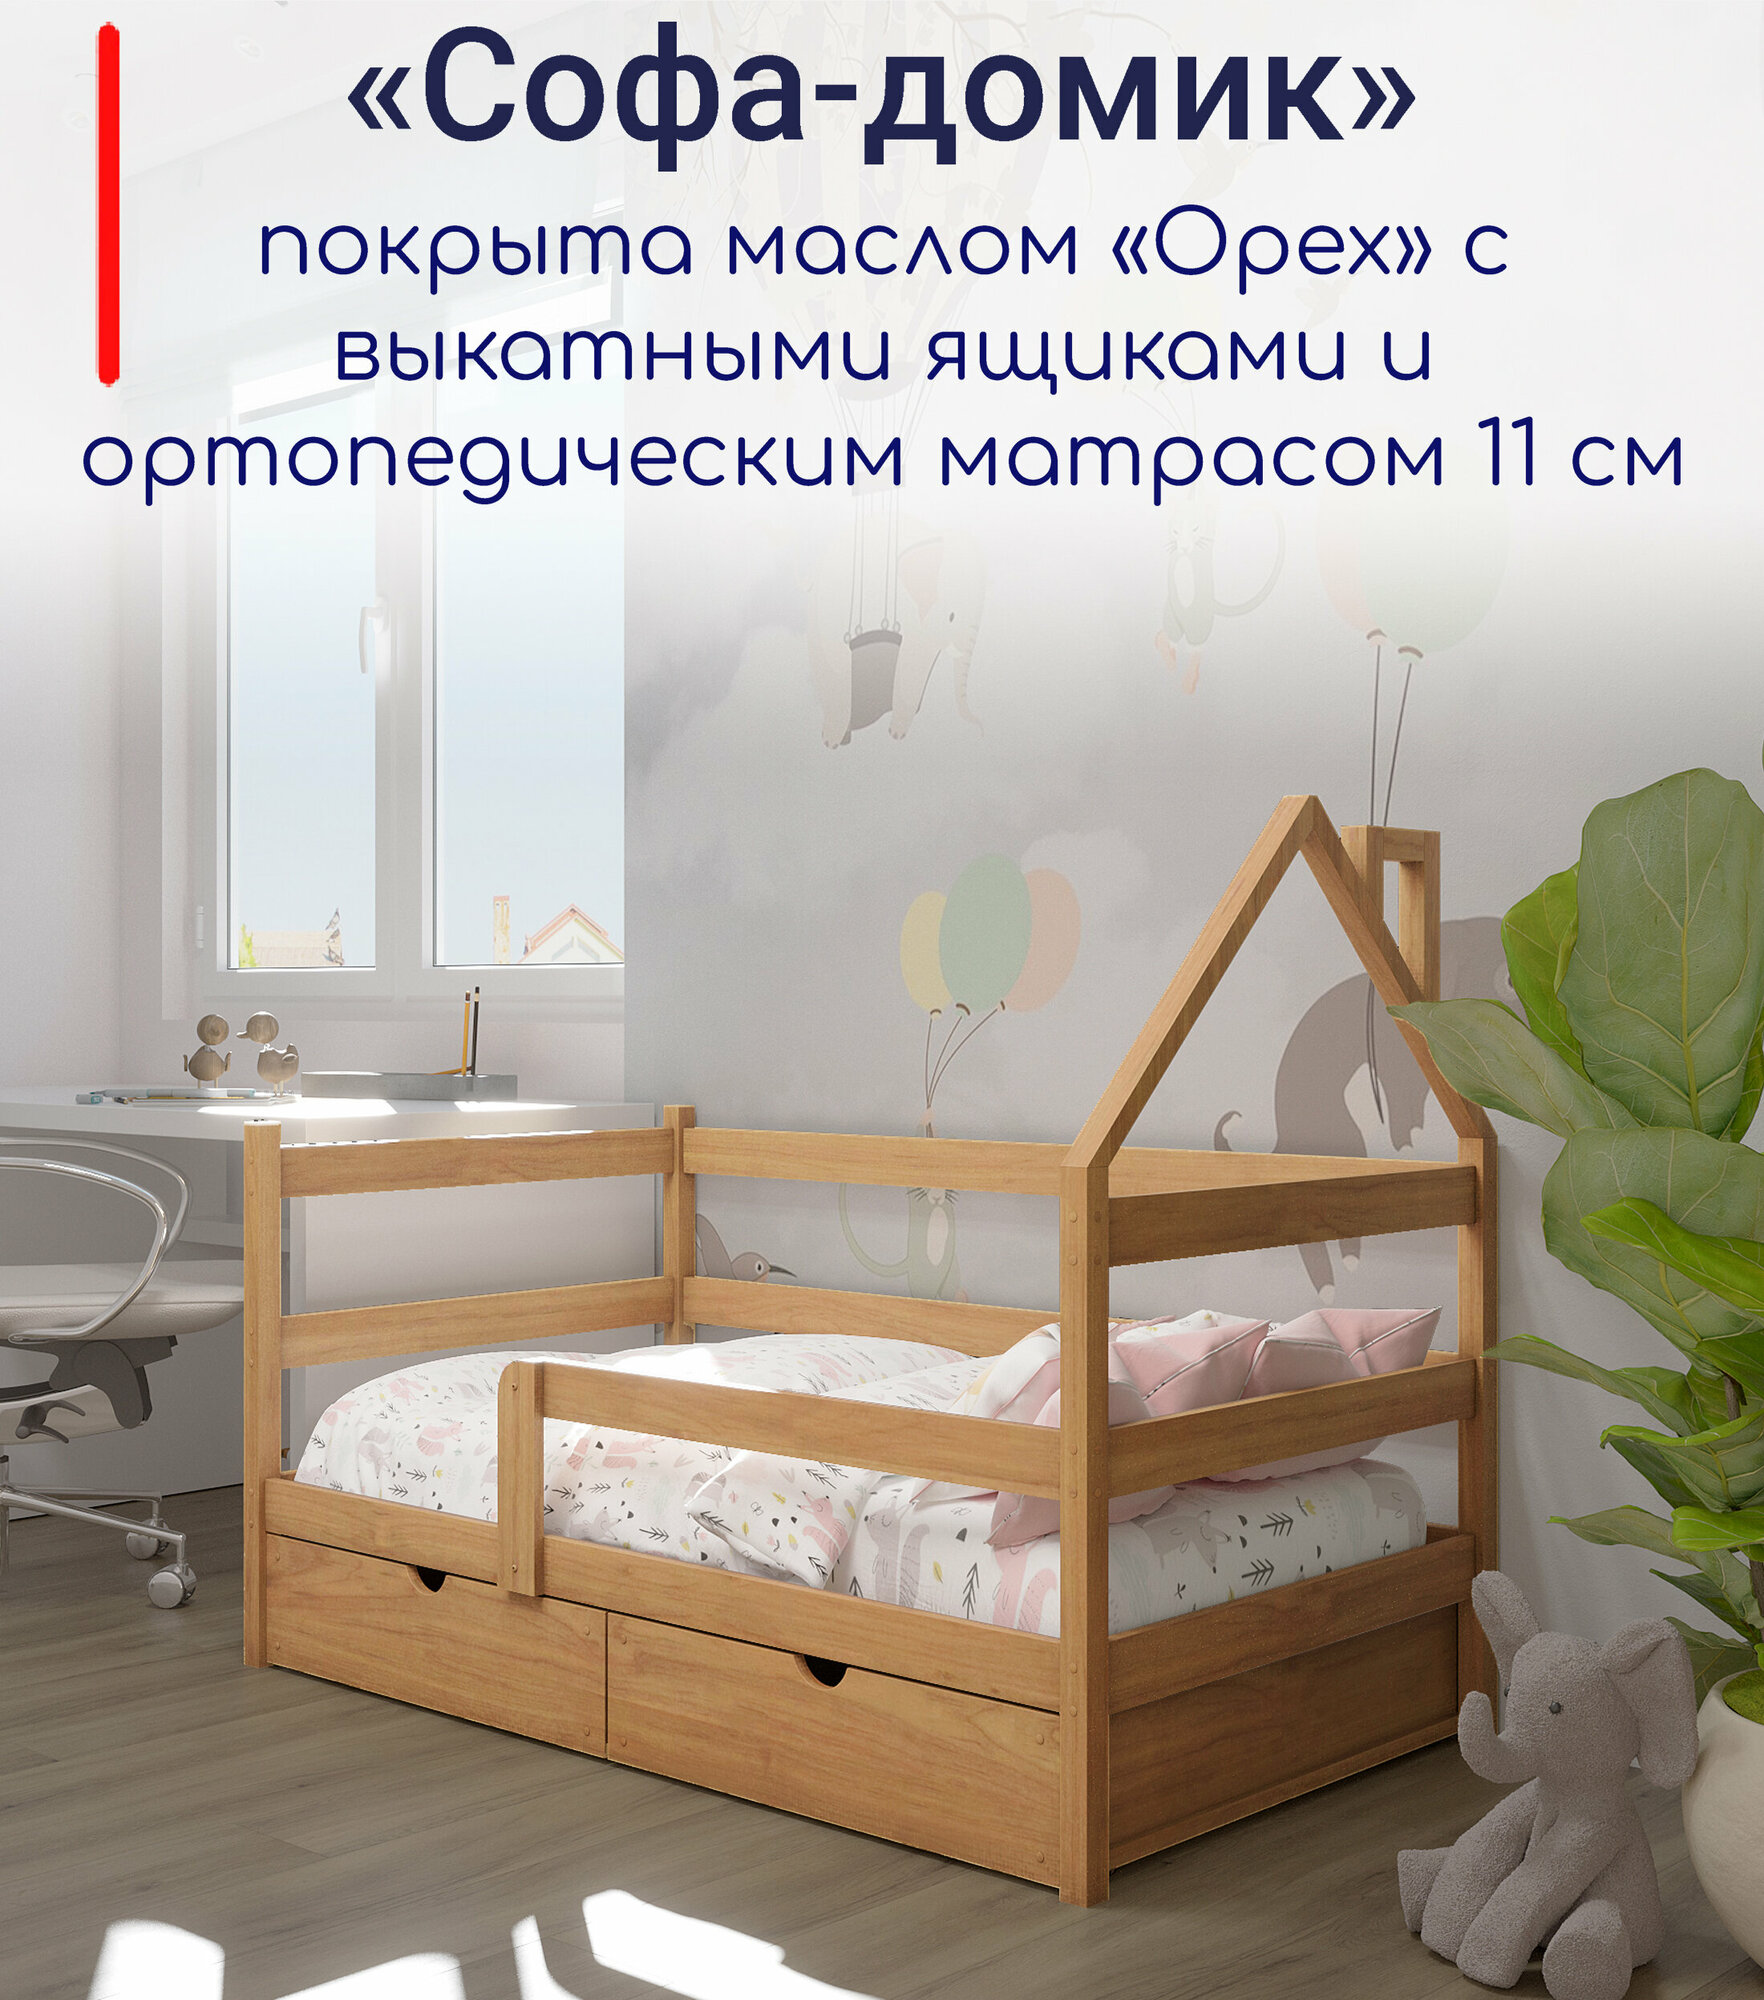 Кровать детская, подростковая "Софа-домик", спальное место 180х90, в комплекте с выкатными ящиками и ортопедическим матрасом, масло "Орех", из массива